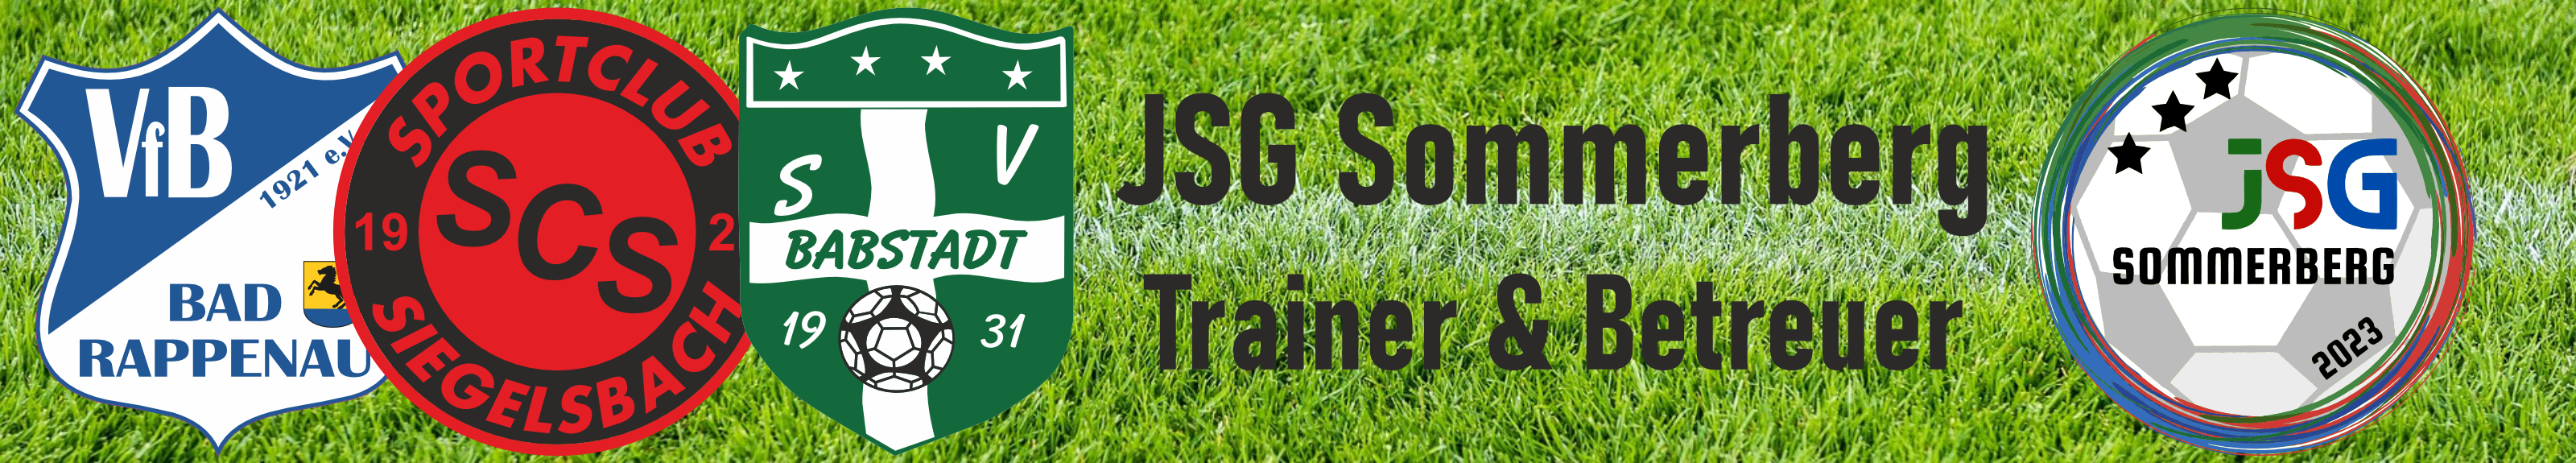 JSG Sommerberg Trainer Title Image